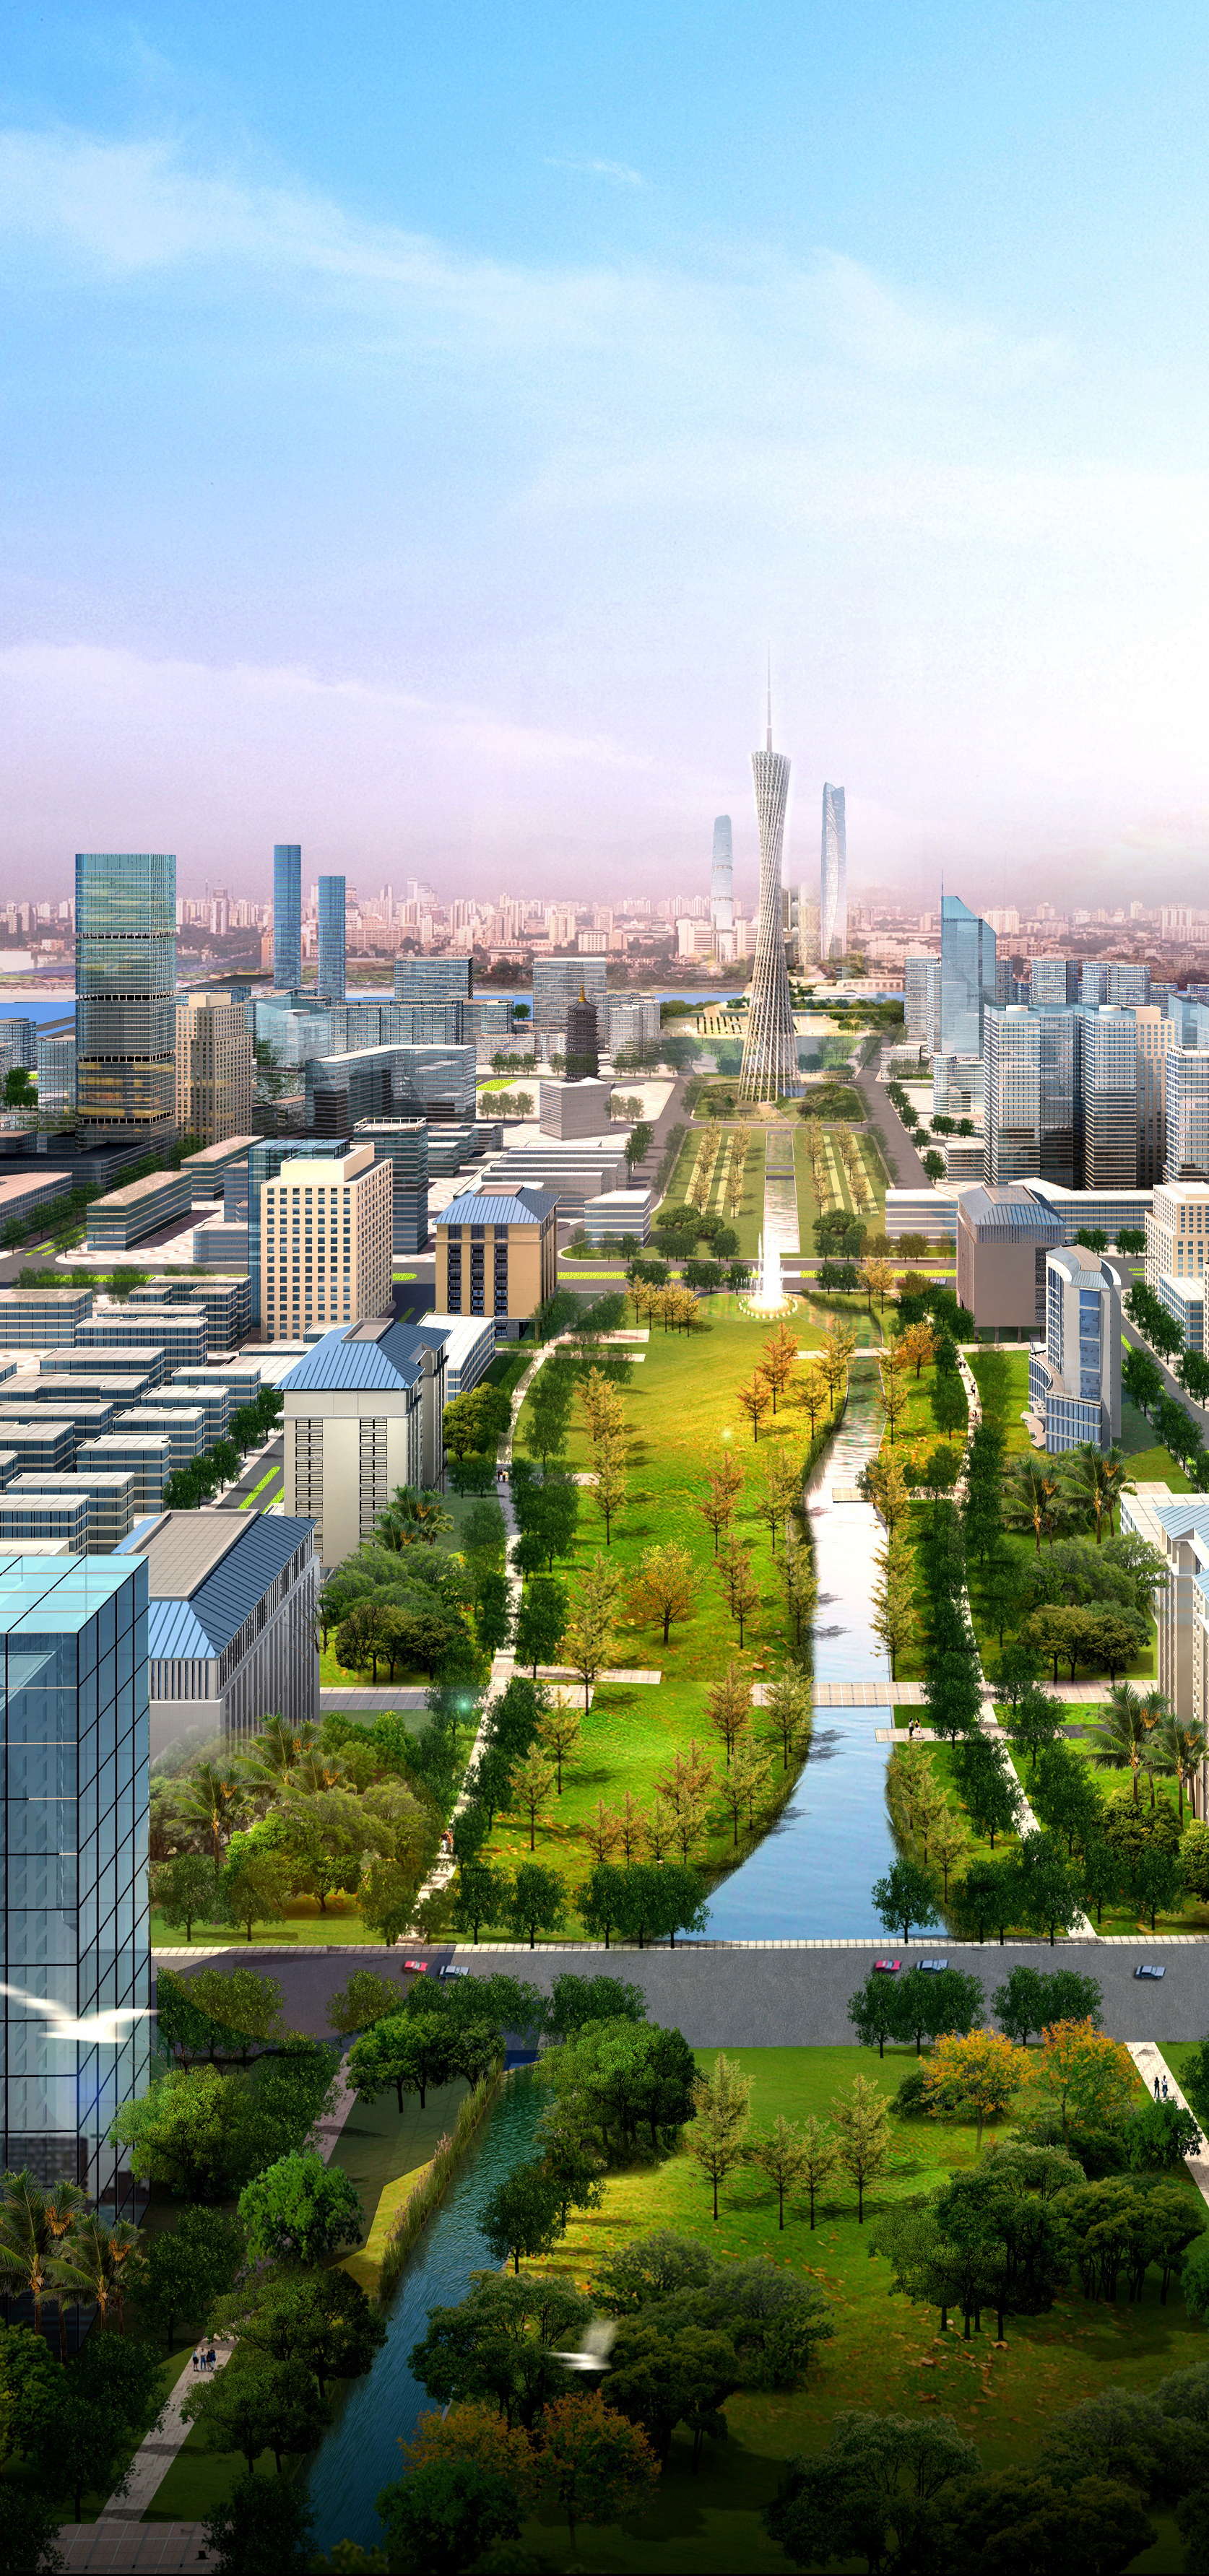 Guangzhou south axis master plan 